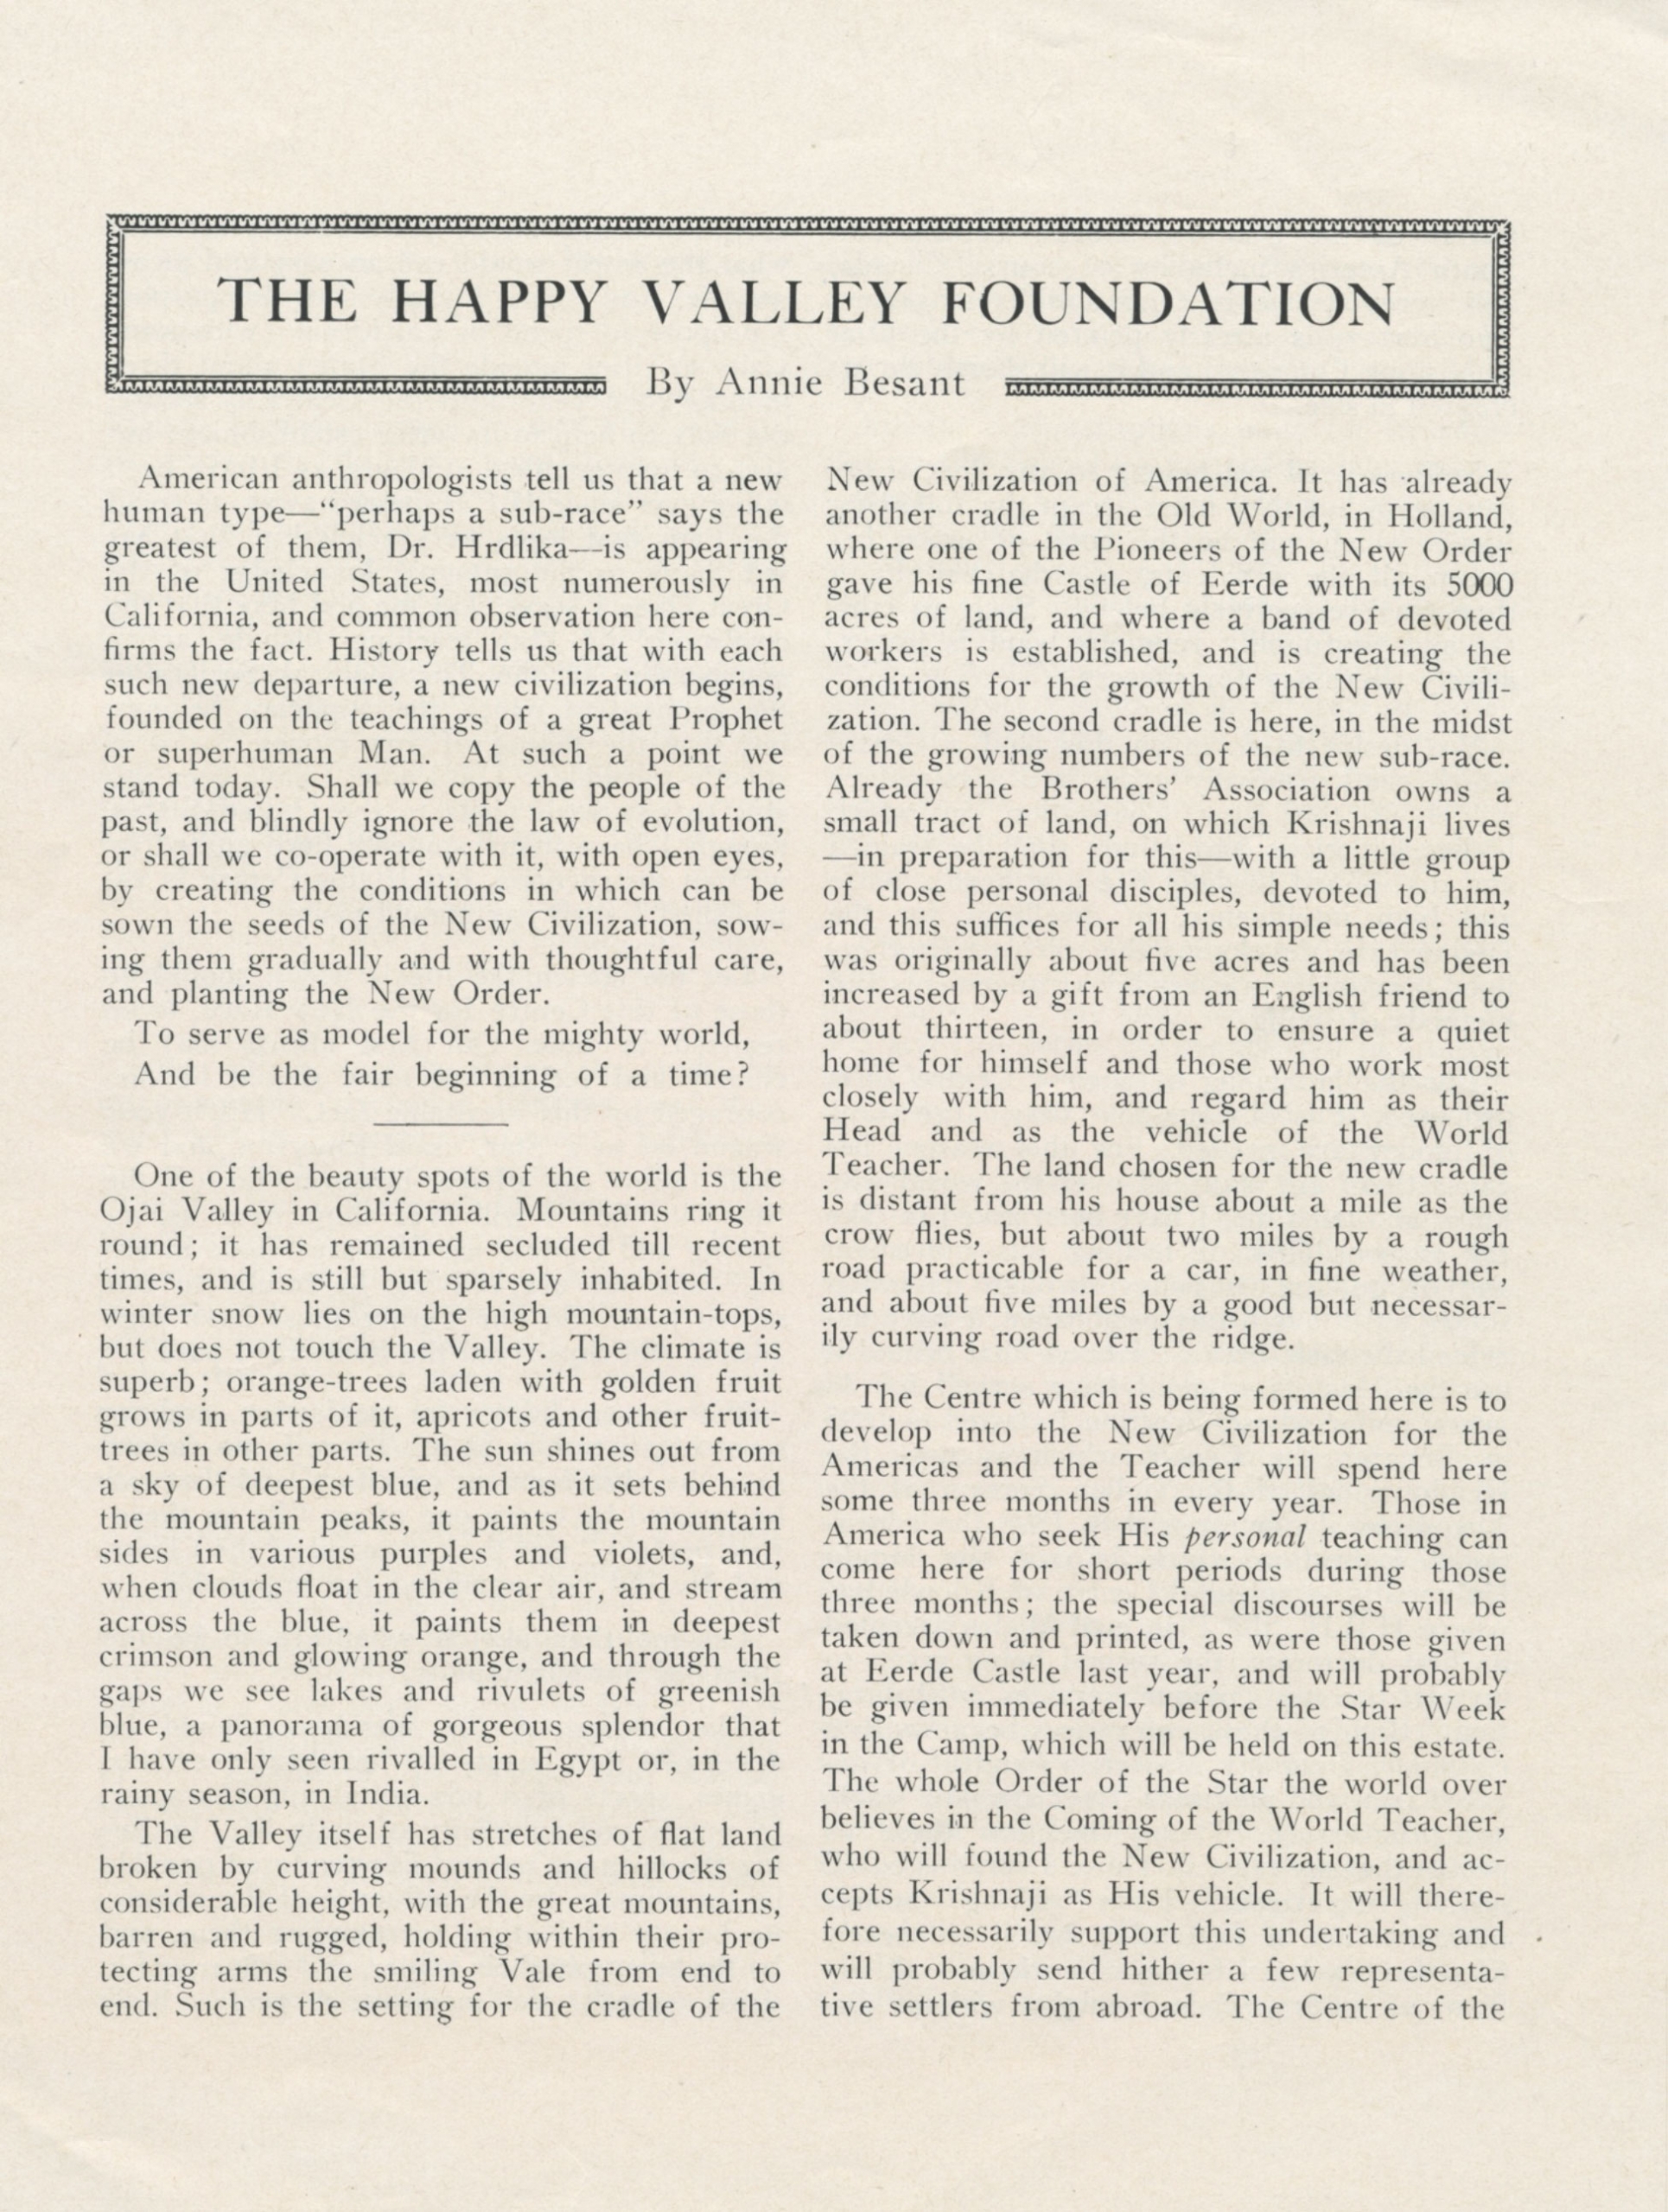 HVF Announcement 1927